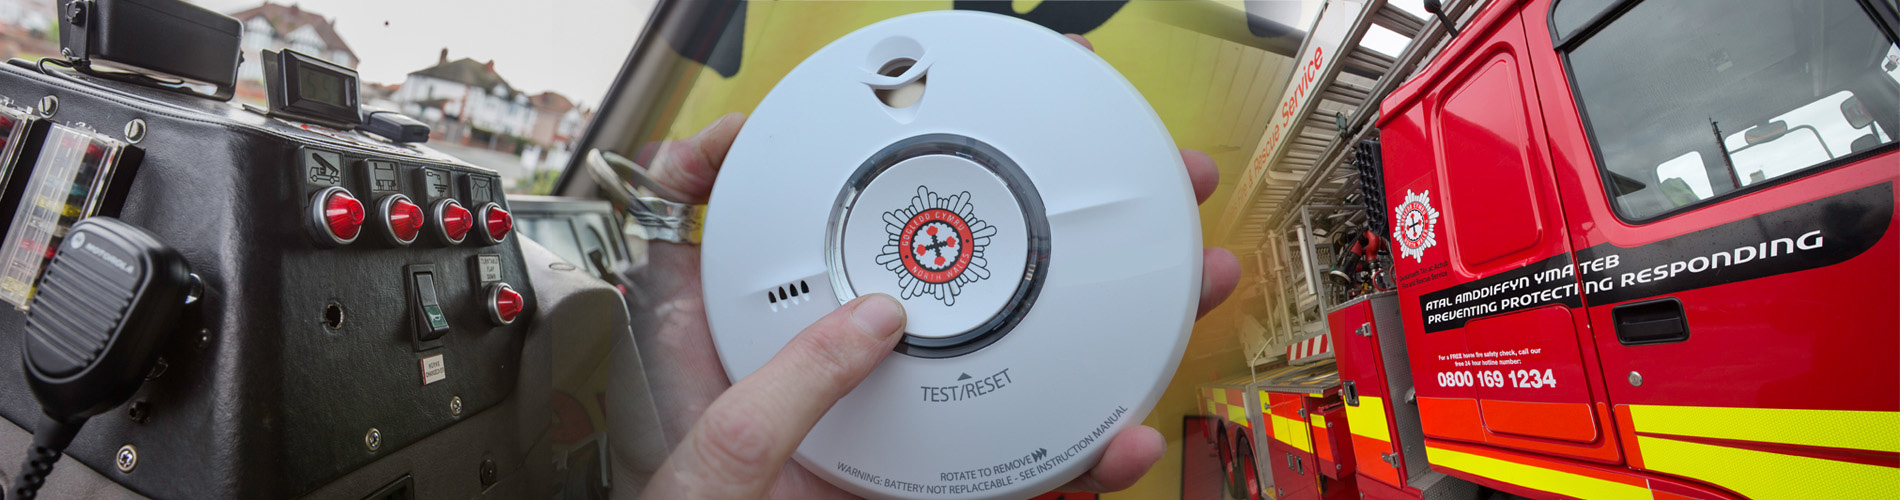 Promoting smoke alarm testing